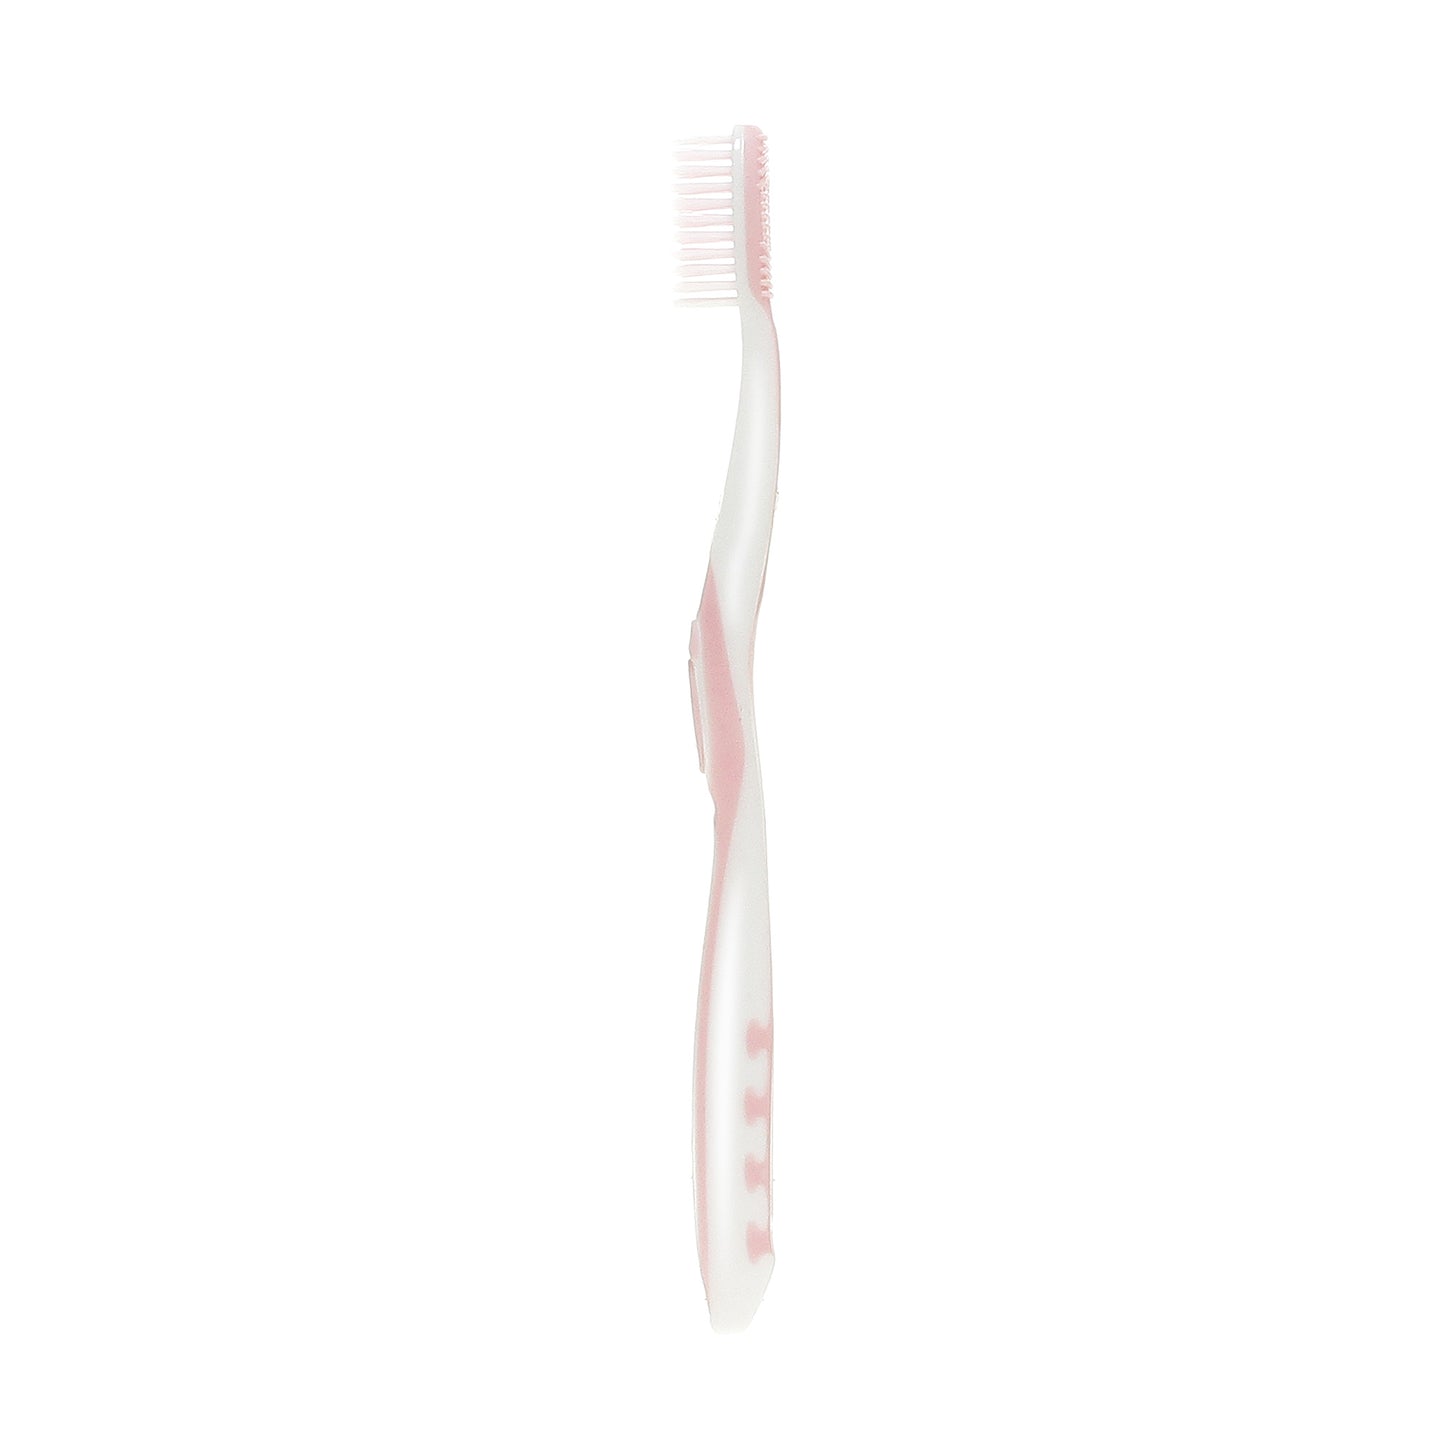 Alert Optimum Toothbrush Pink